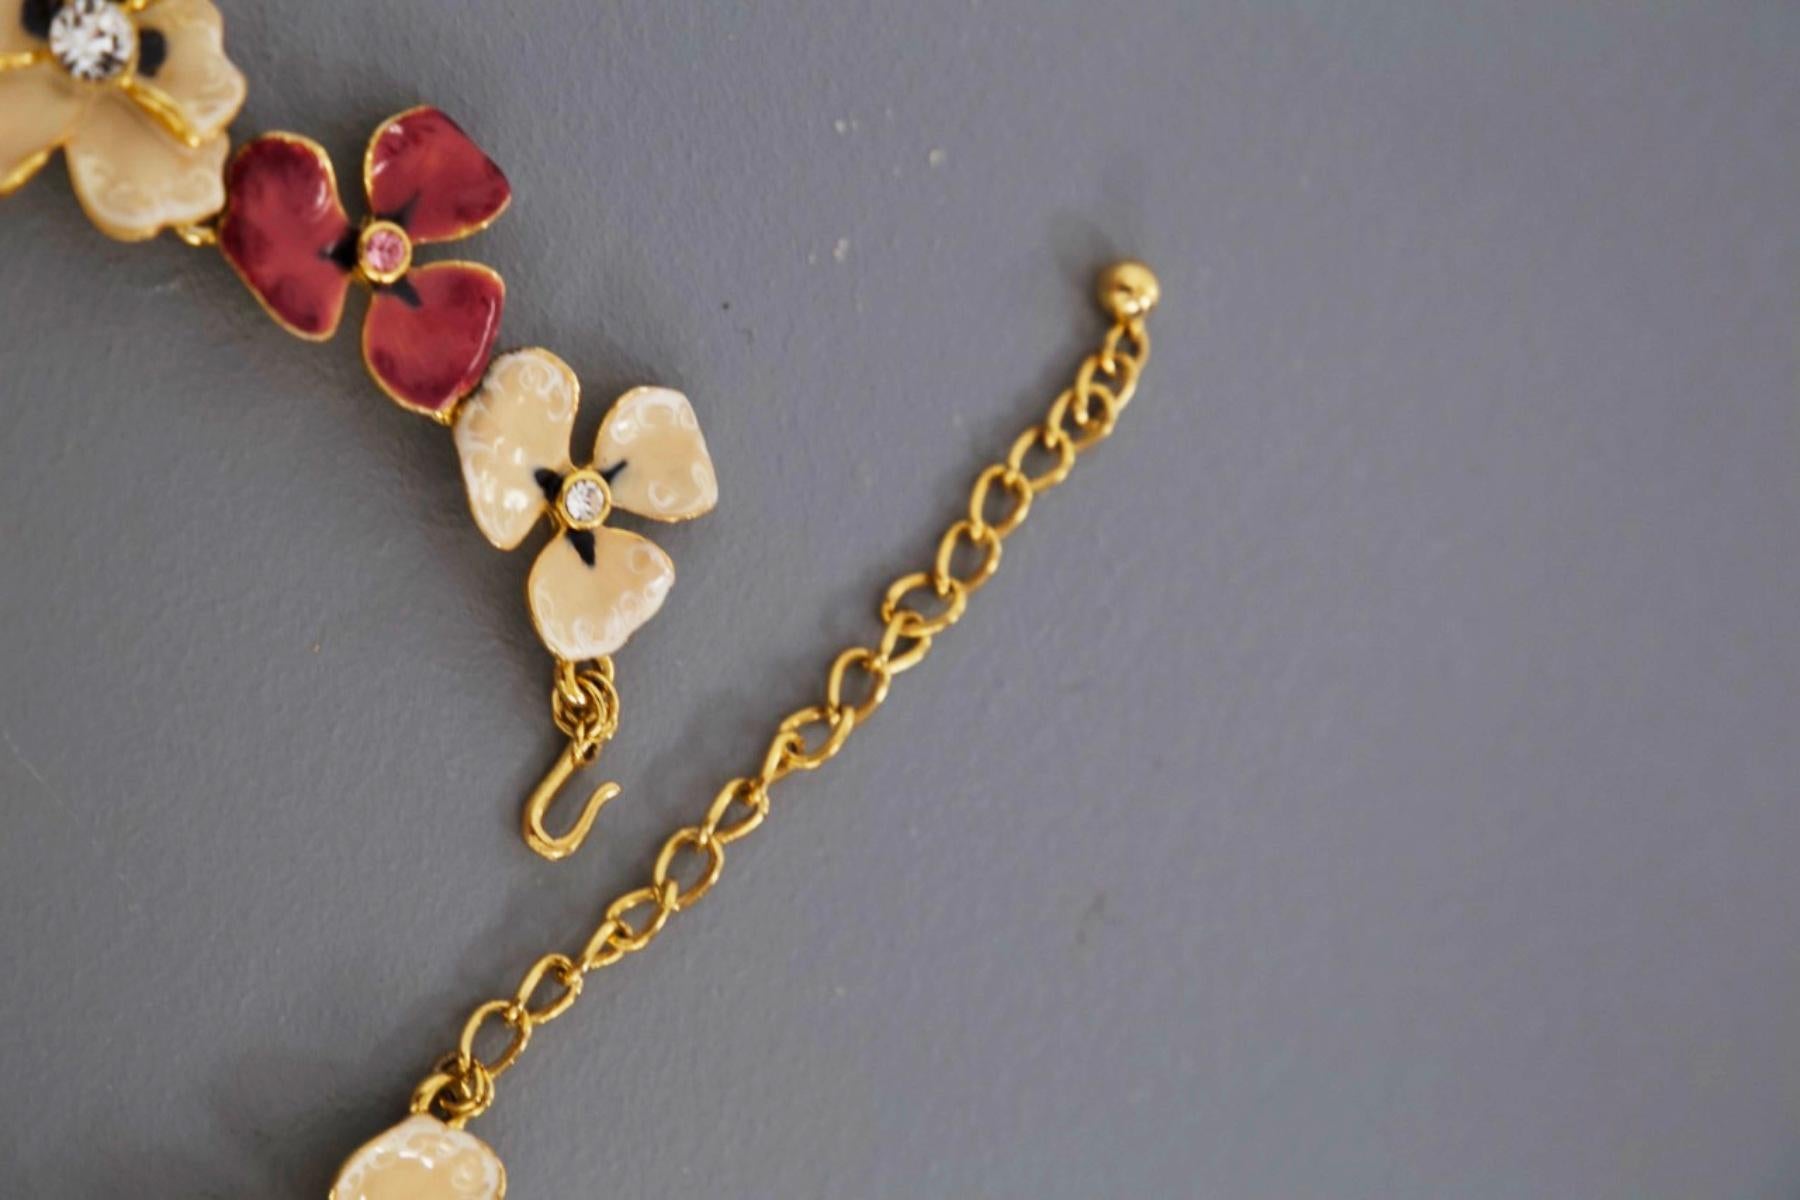 Kenneth Lane Vintage Flower Pendant Necklace For Sale 3